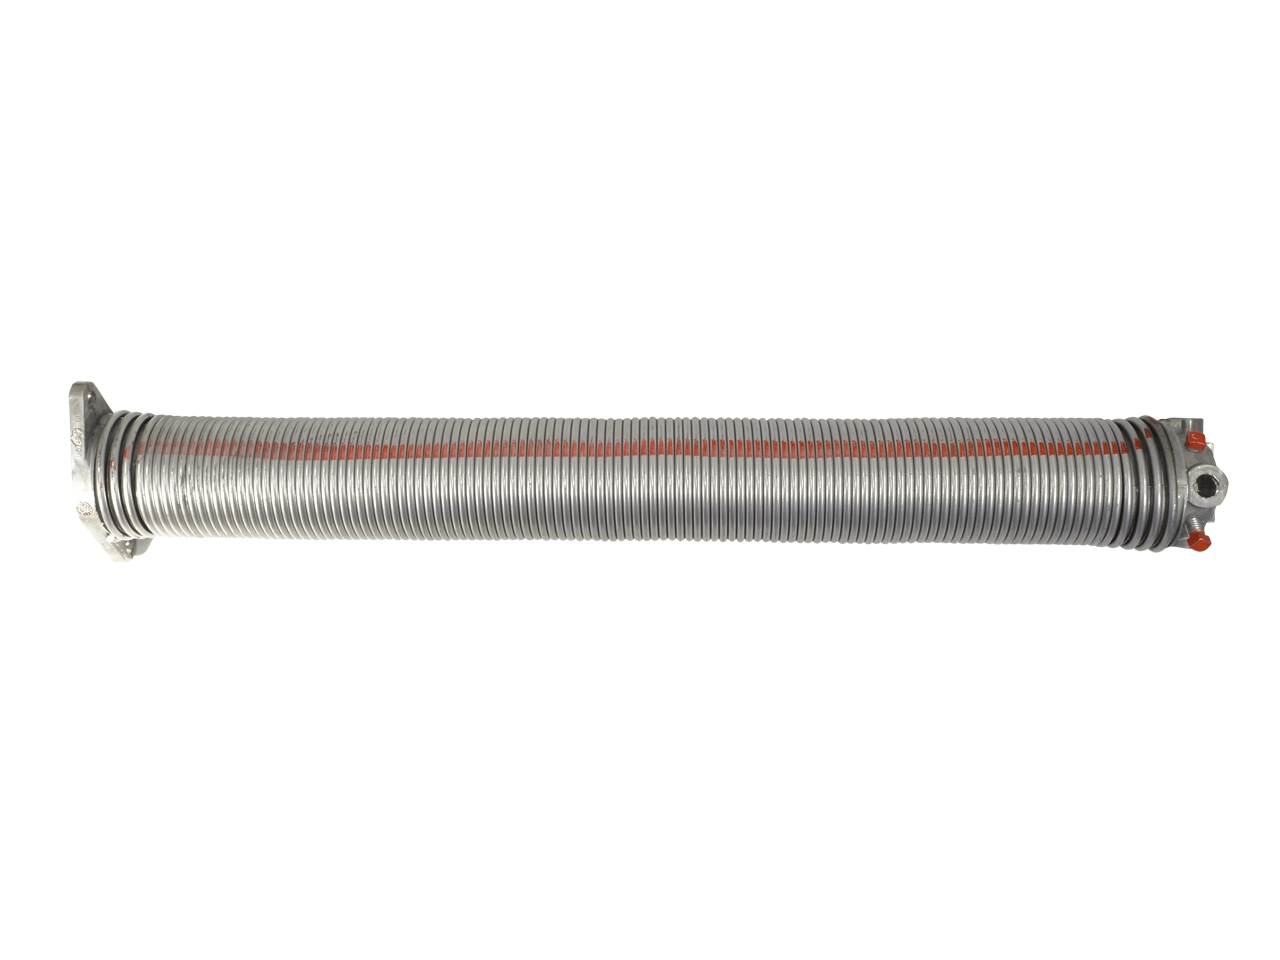 Torfeder, Innendurchmesser 95 mm, Drahtstärke 7,5 mm, Windung Links, mit Köpfen für Welle 25,4mm